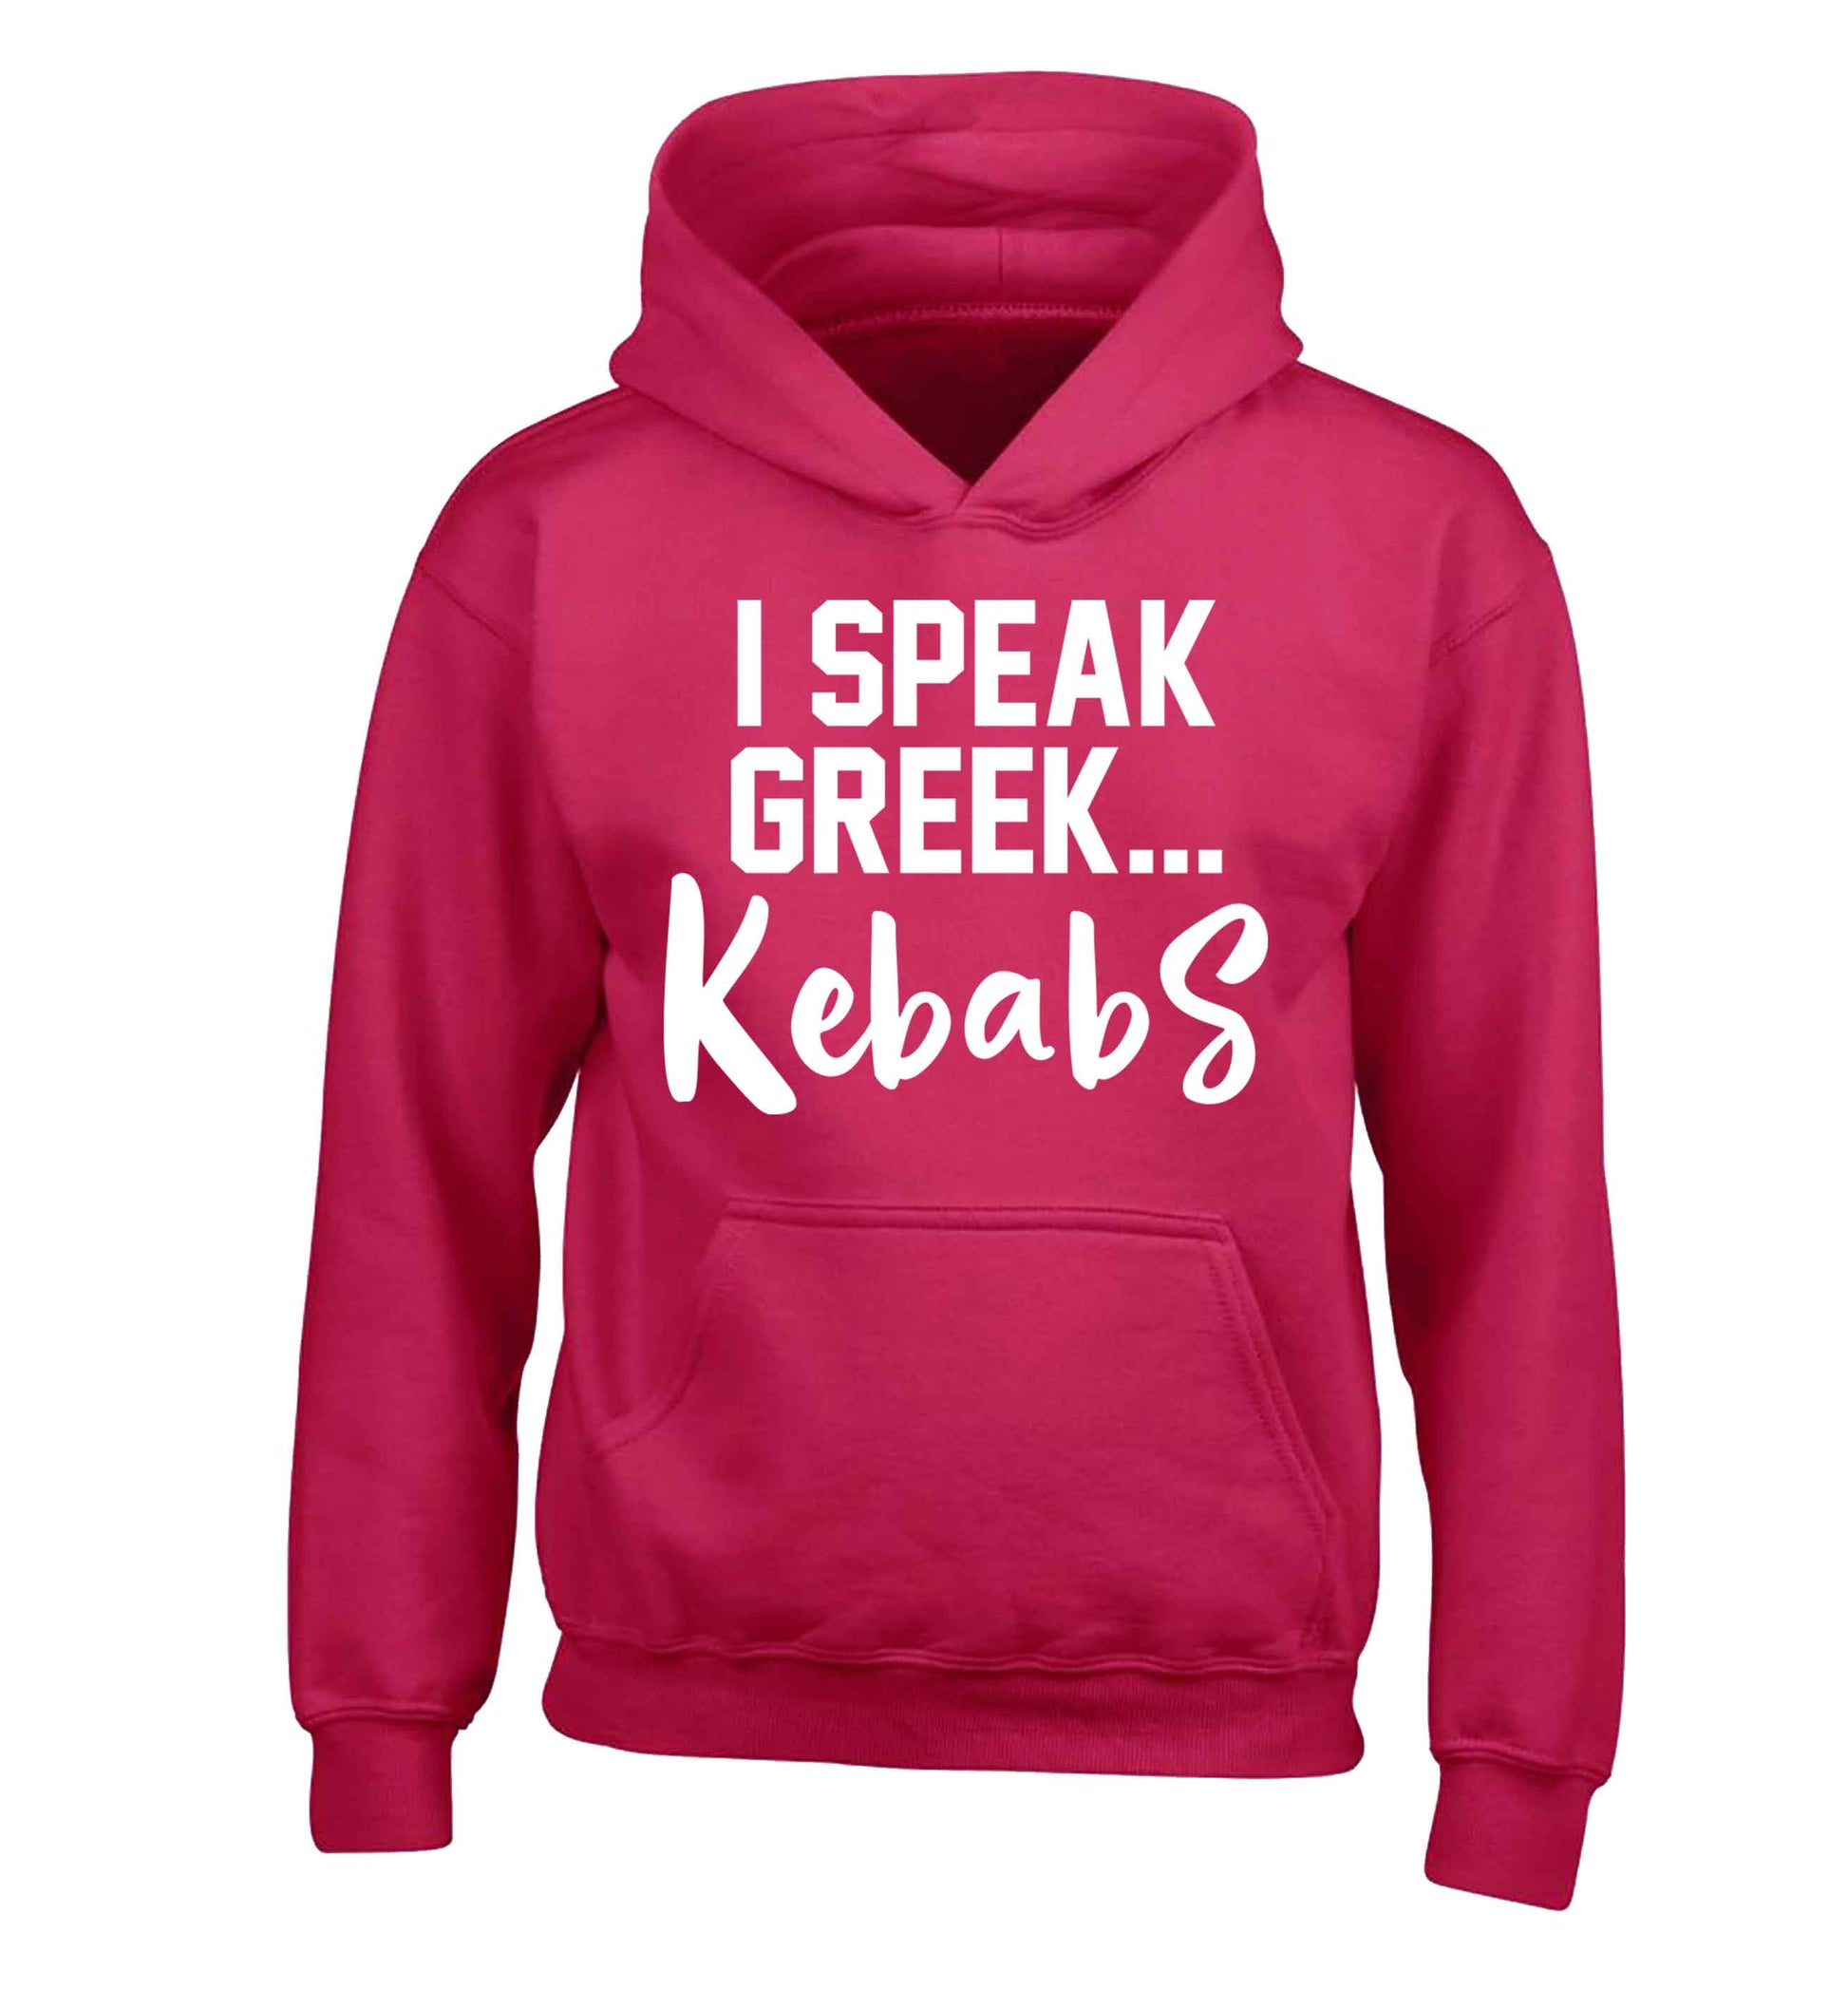 I speak Greek...kebabs children's pink hoodie 12-13 Years